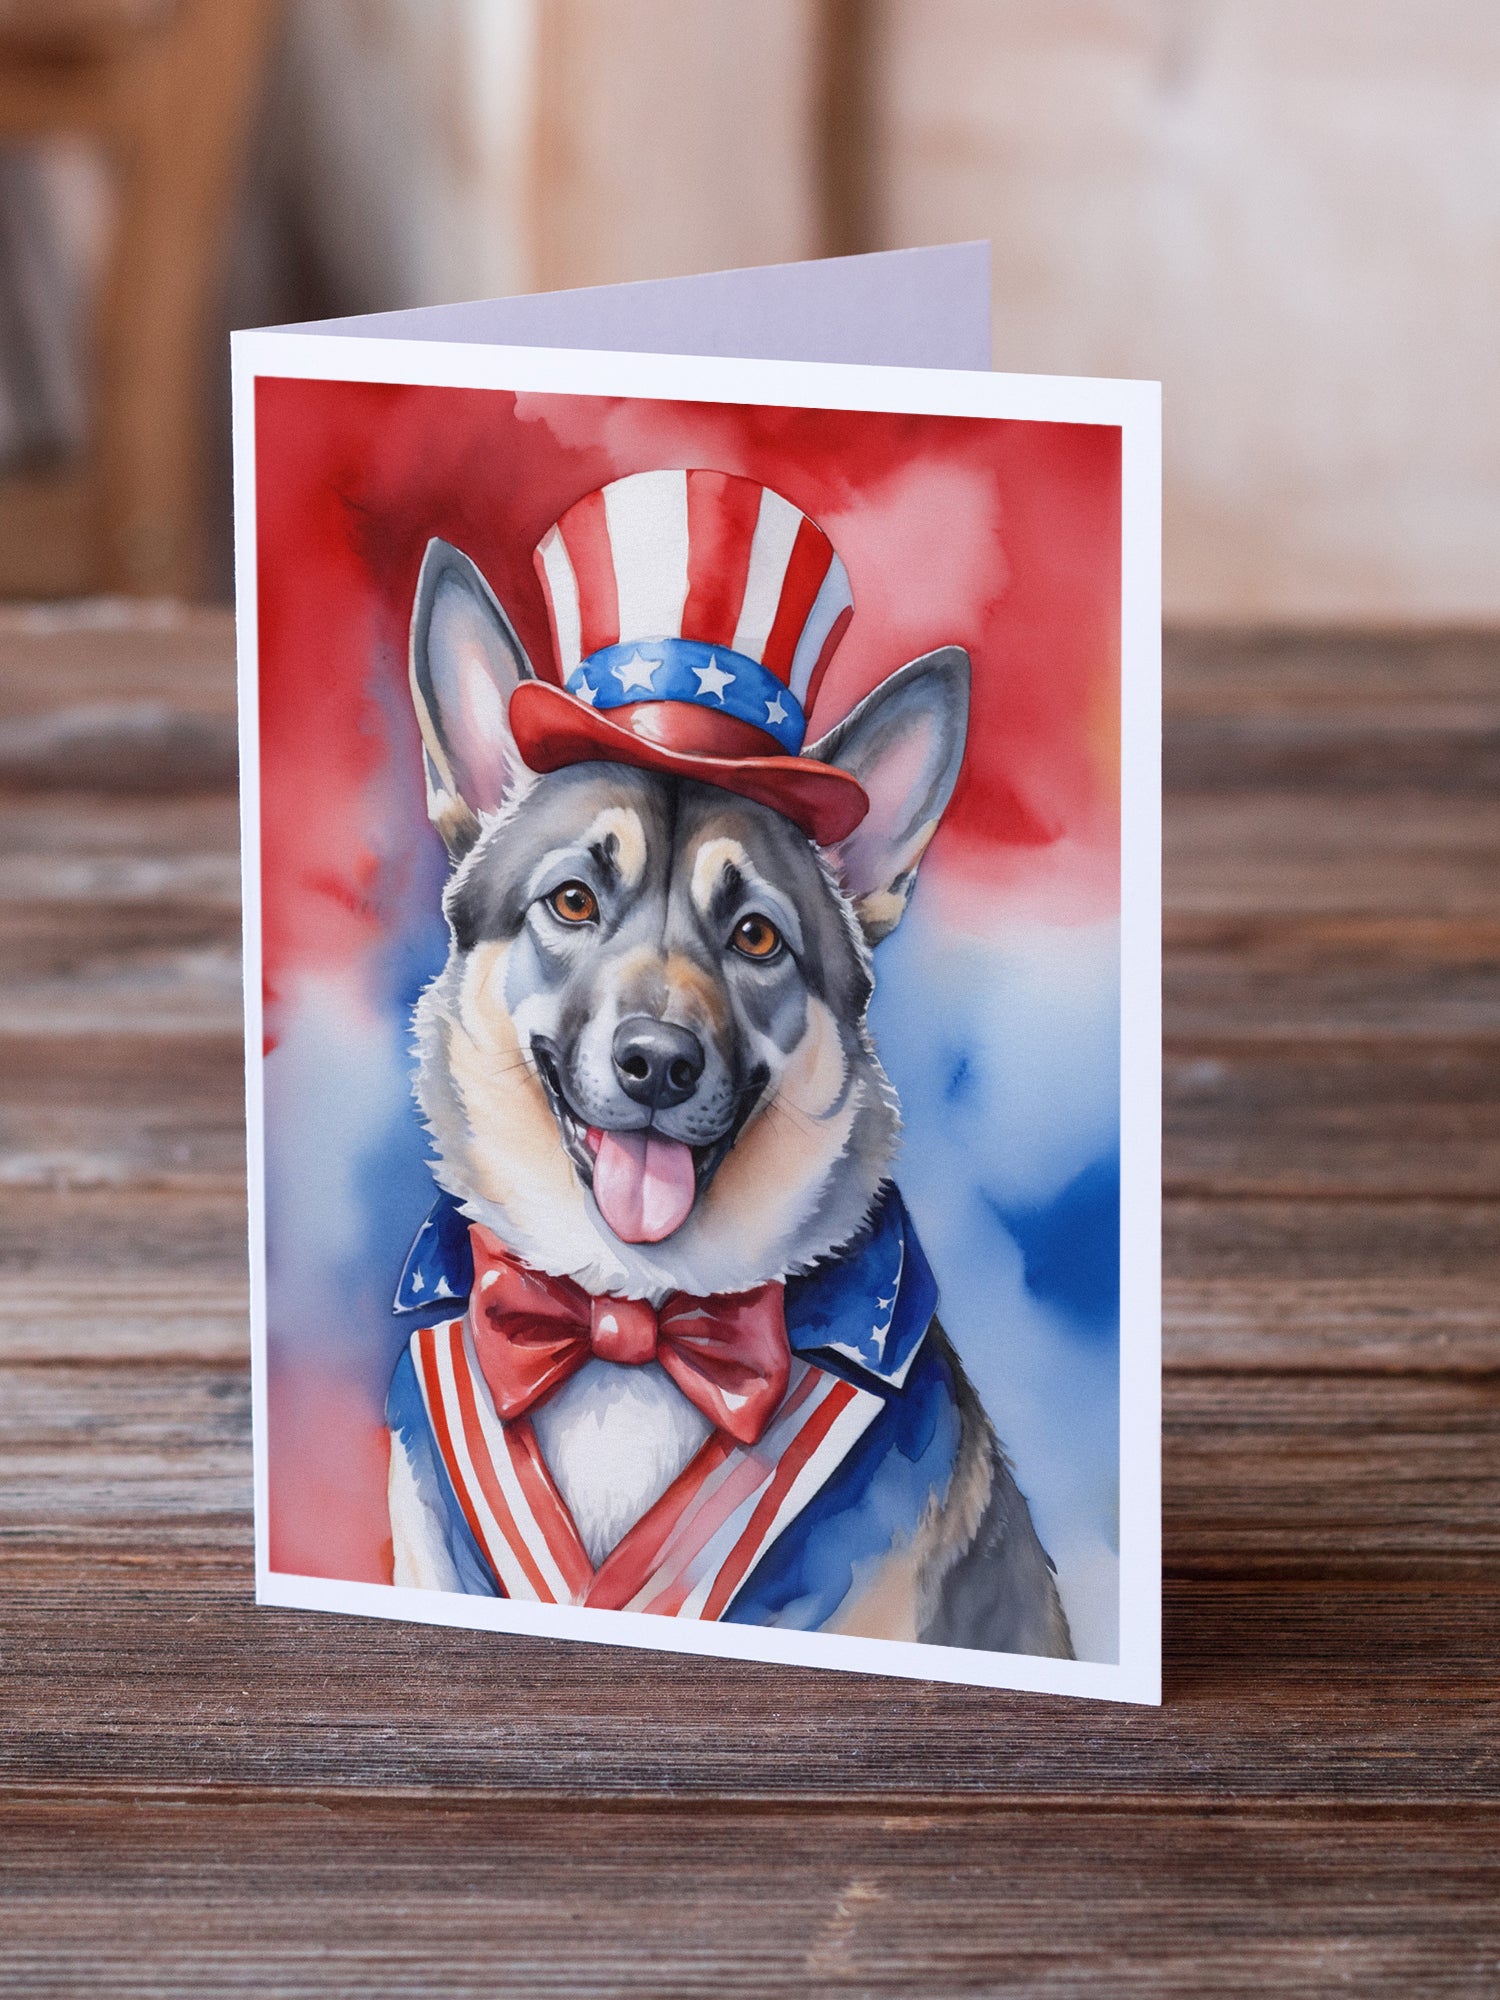 Buy this Norwegian Elkhound Patriotic American Greeting Cards Pack of 8